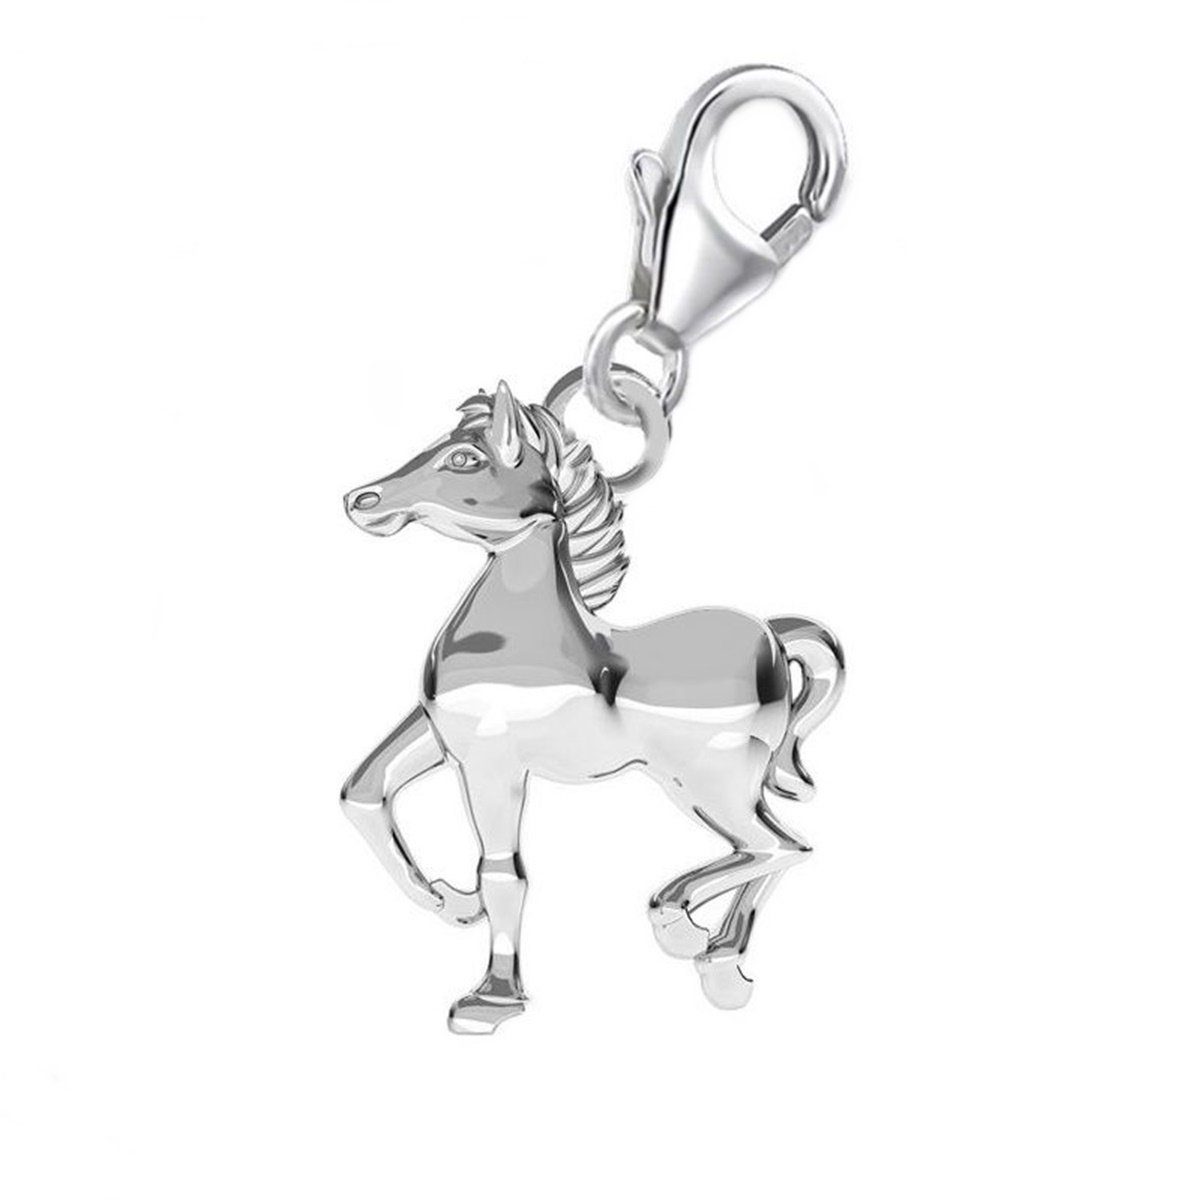 Goldene Hufeisen Charm-Einhänger Pferd Karabiner Charm Anhänger für Bettelarmband 925 Silber (inkl. Etui), für Gliederarmband oder Halskette | Charm-Anhänger